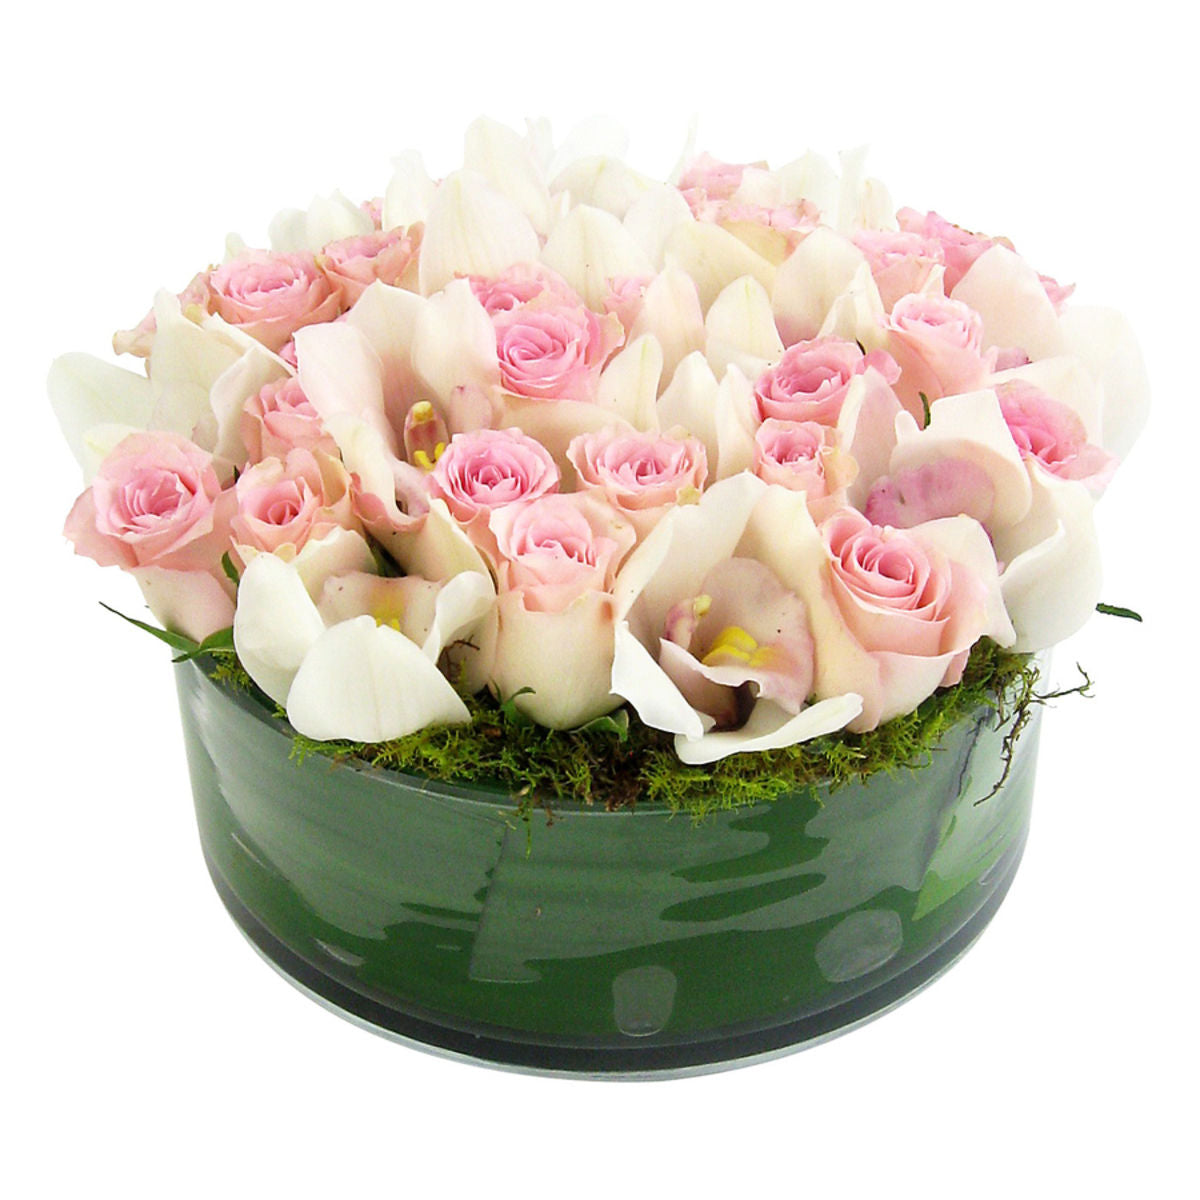 Chanel arrangement - Arabian Petals (5367330865316)